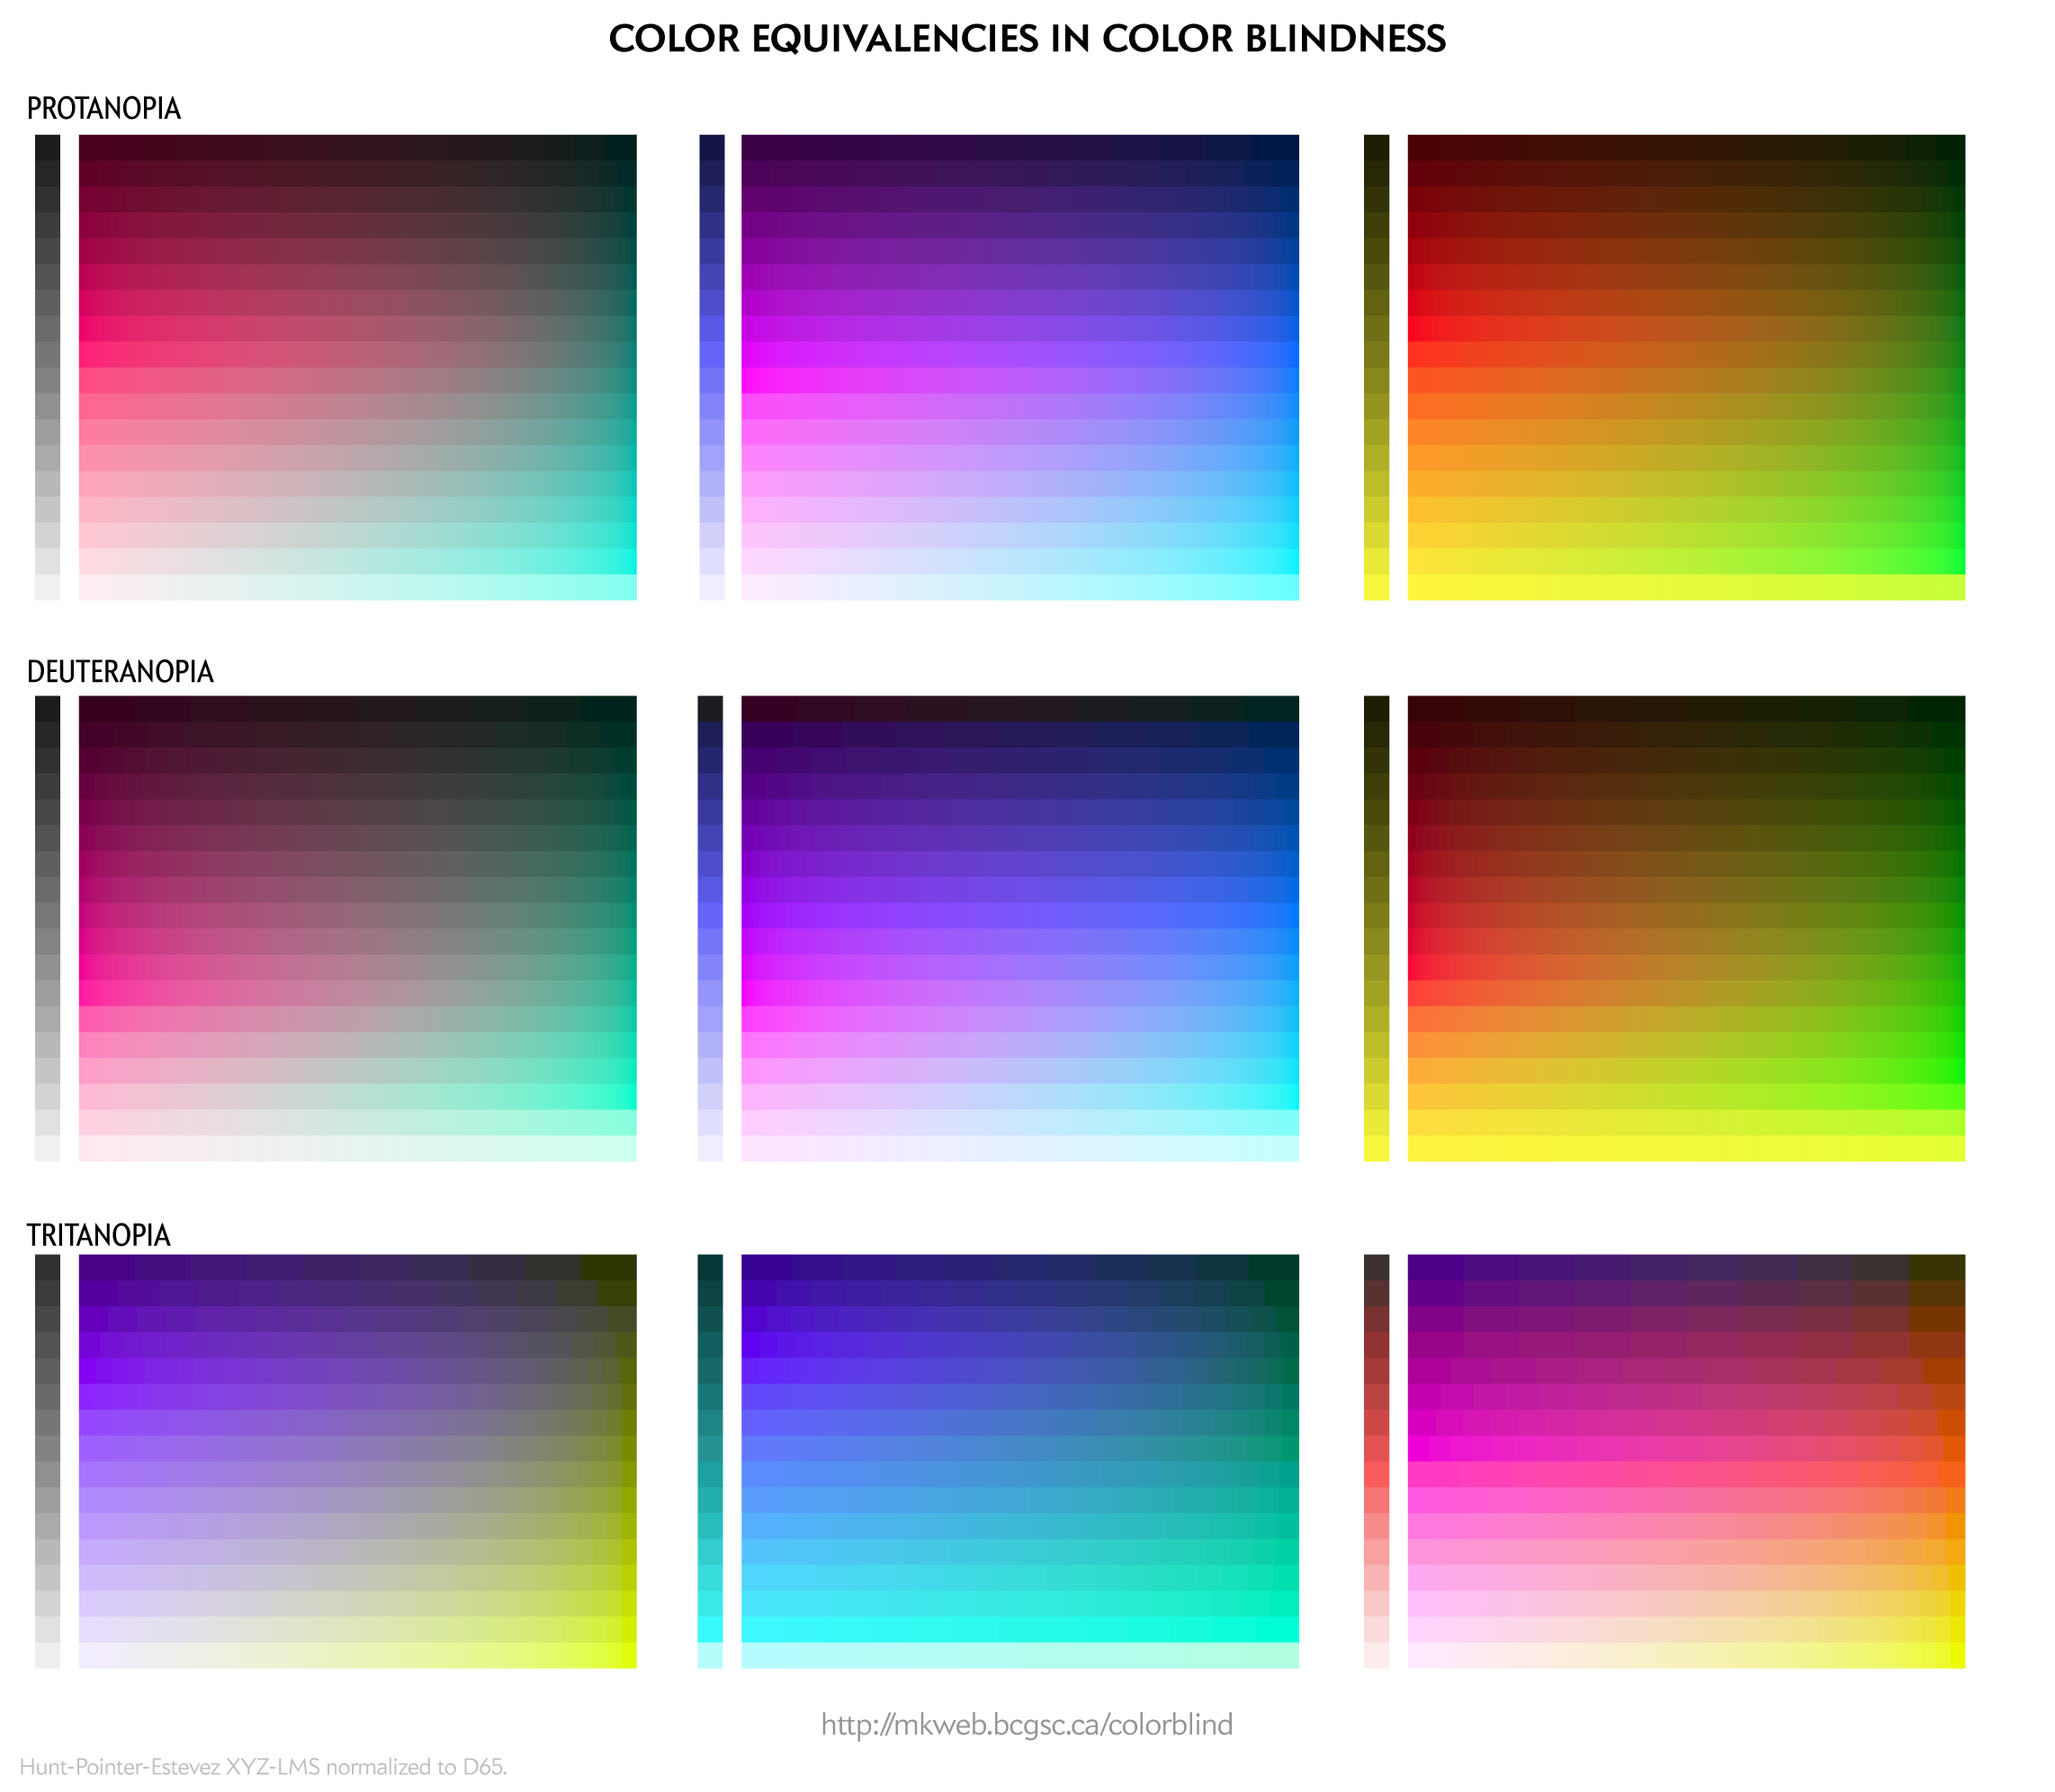 Color equivalencies in color blindness for protanopia, deuteranopia and tritanopia. / Martin Krzywinski @MKrzywinski mkweb.bcgsc.ca